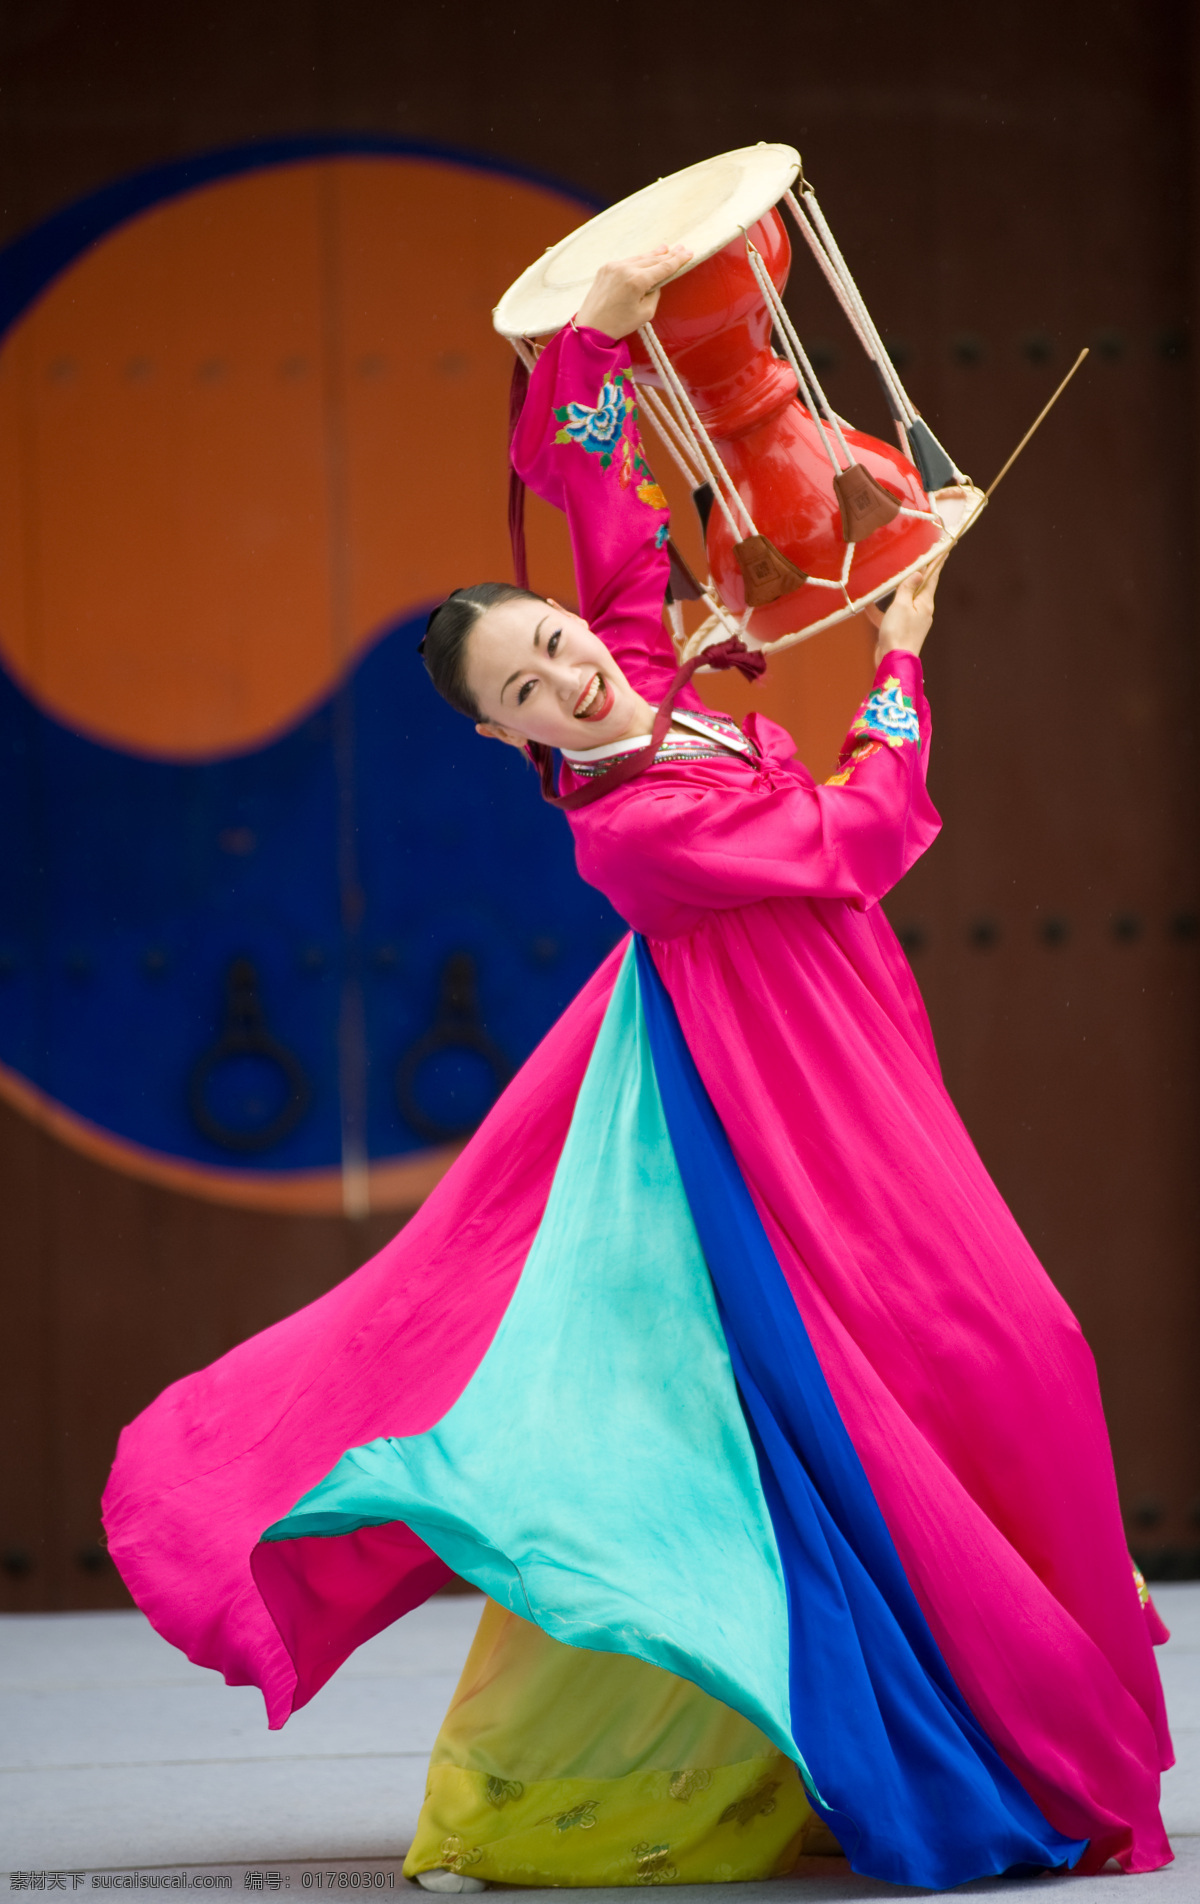 韩国 美女 传统 舞蹈 韩国美女 传统舞蹈 鼓 韩国传统服饰 舞动 击鼓 韩国传统文化 舞蹈音乐 文化艺术